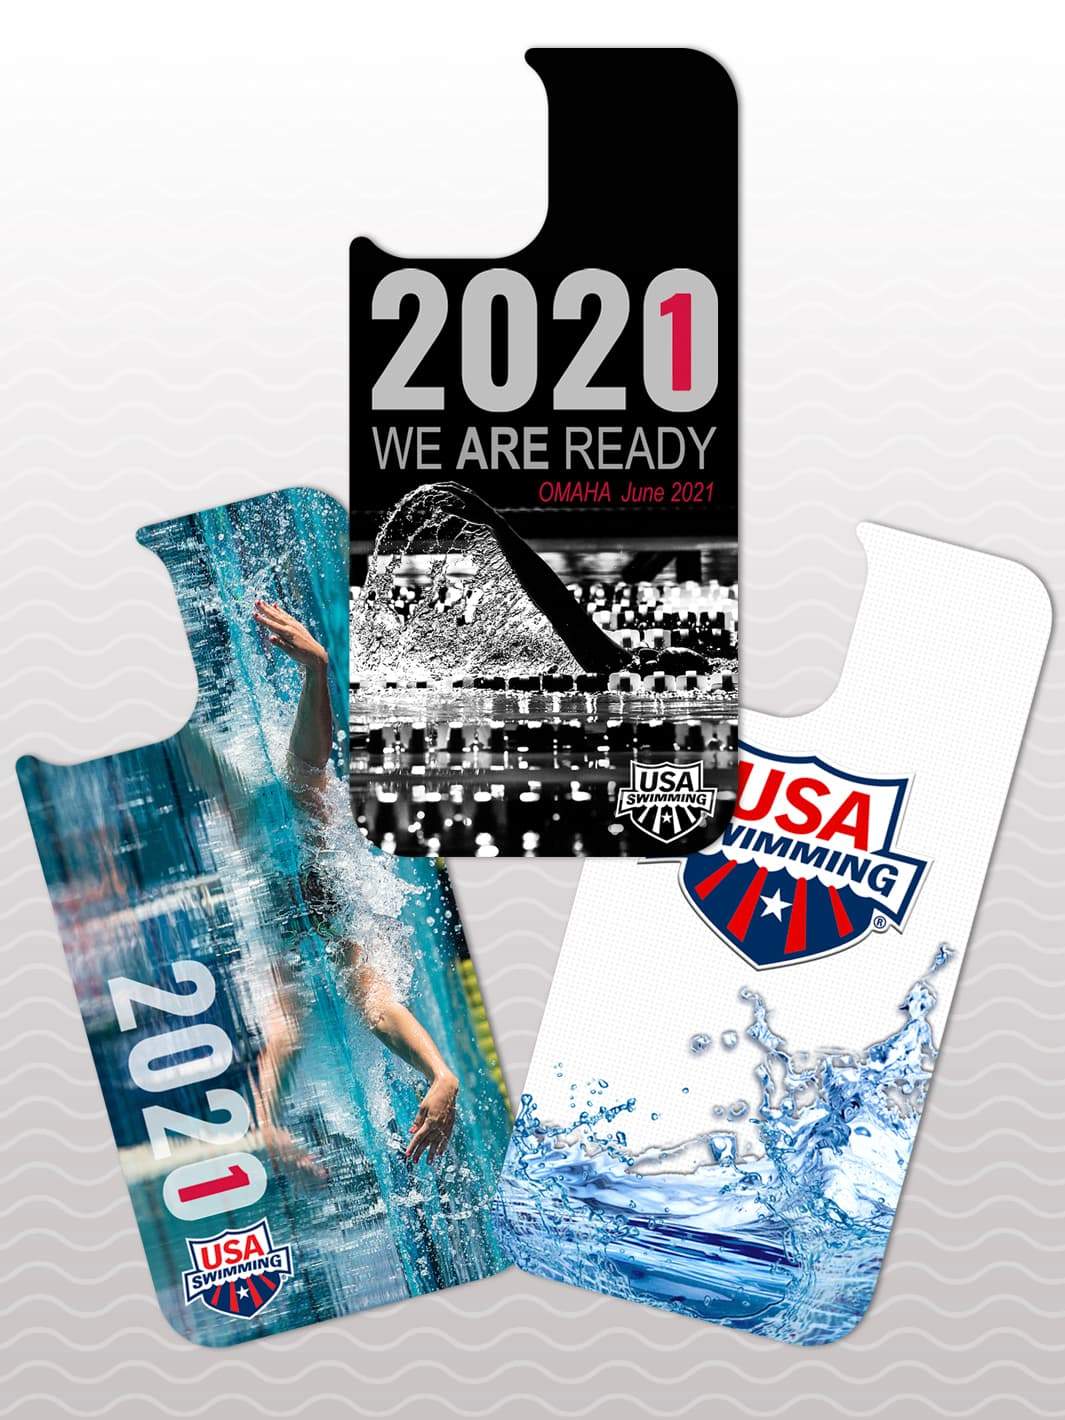 Phone Swap Pack - USA-Swimming 1